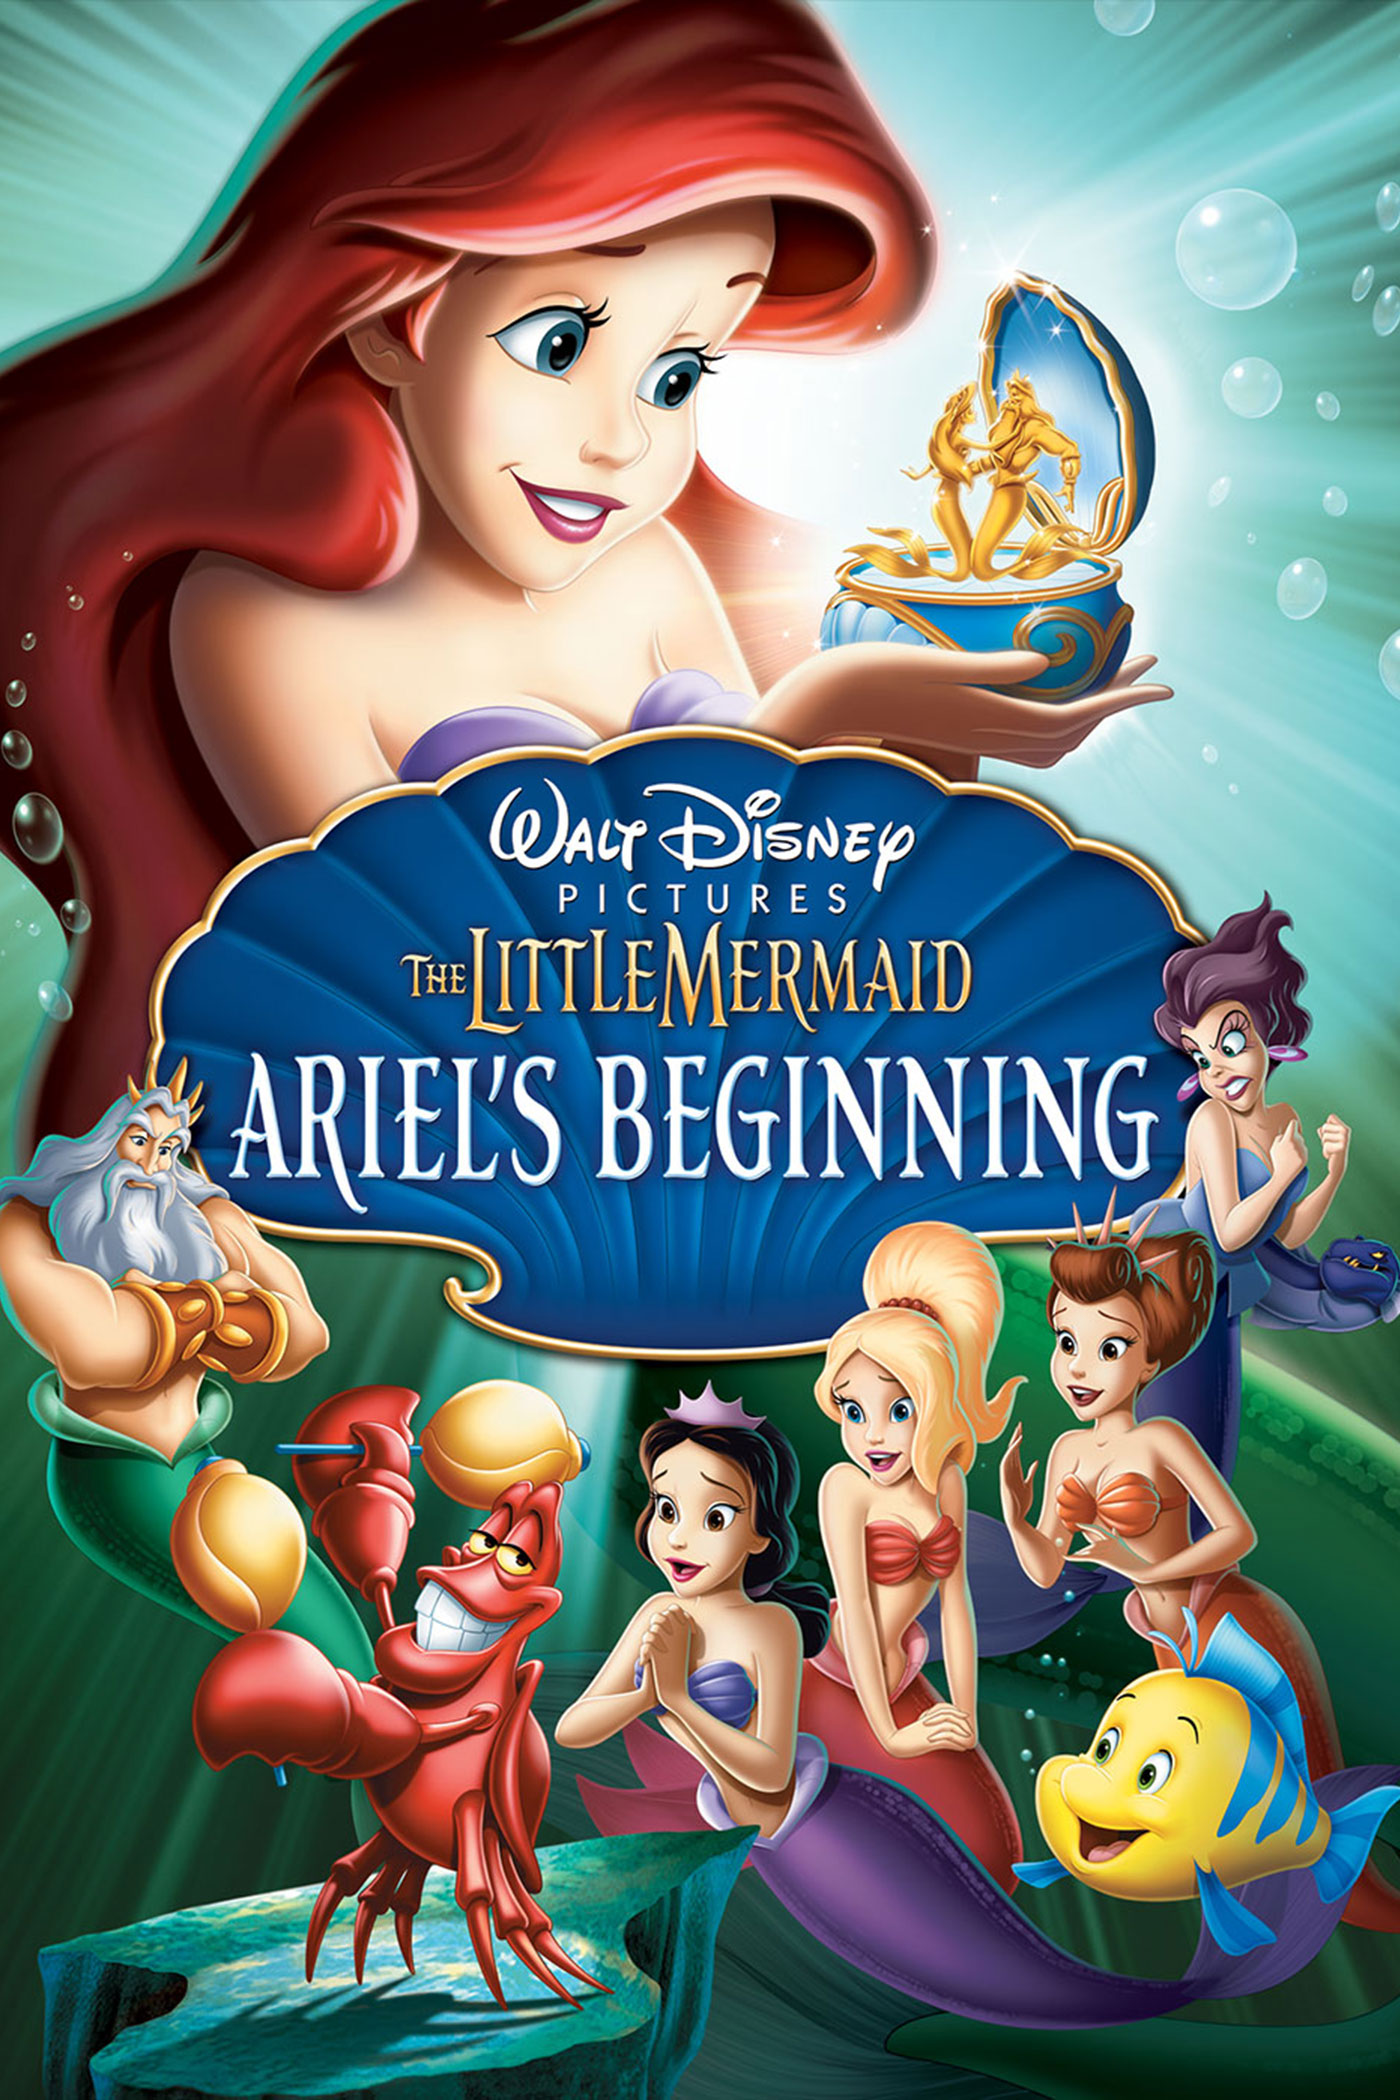 ดูหนังออนไลน์ฟรี The Little Mermaid Ariel’s Beginning (2008) เงือกน้อยผจญภัย ภาค 3 ตอน กำเนิดแอเรียลกับอาณาจักรอันเงียบงัน